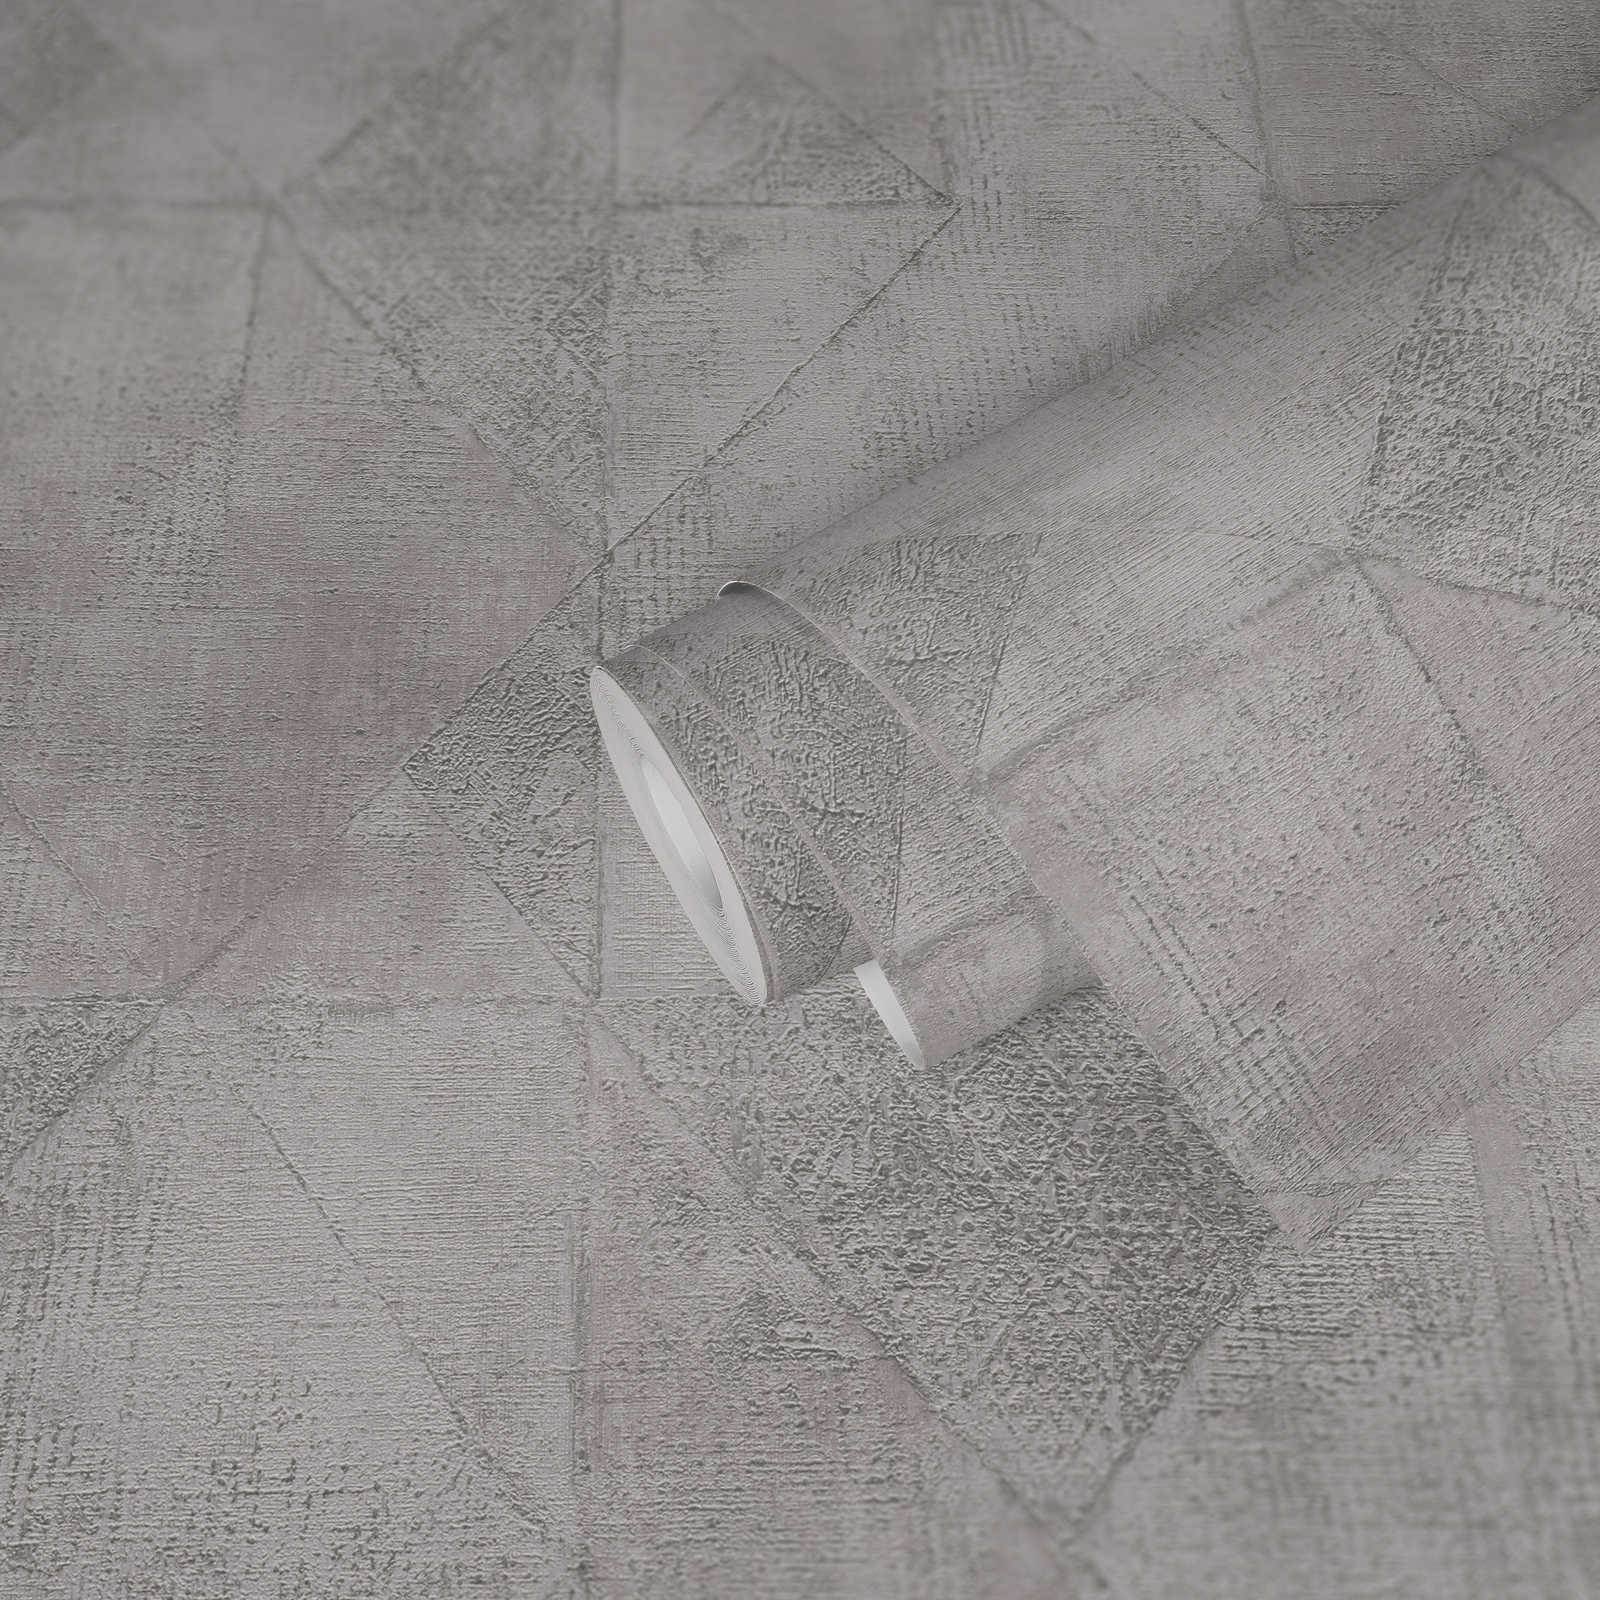             Tapete mit Grafik Dreieck-Muster metallic glänzend strukturiert – Grau, Silber
        